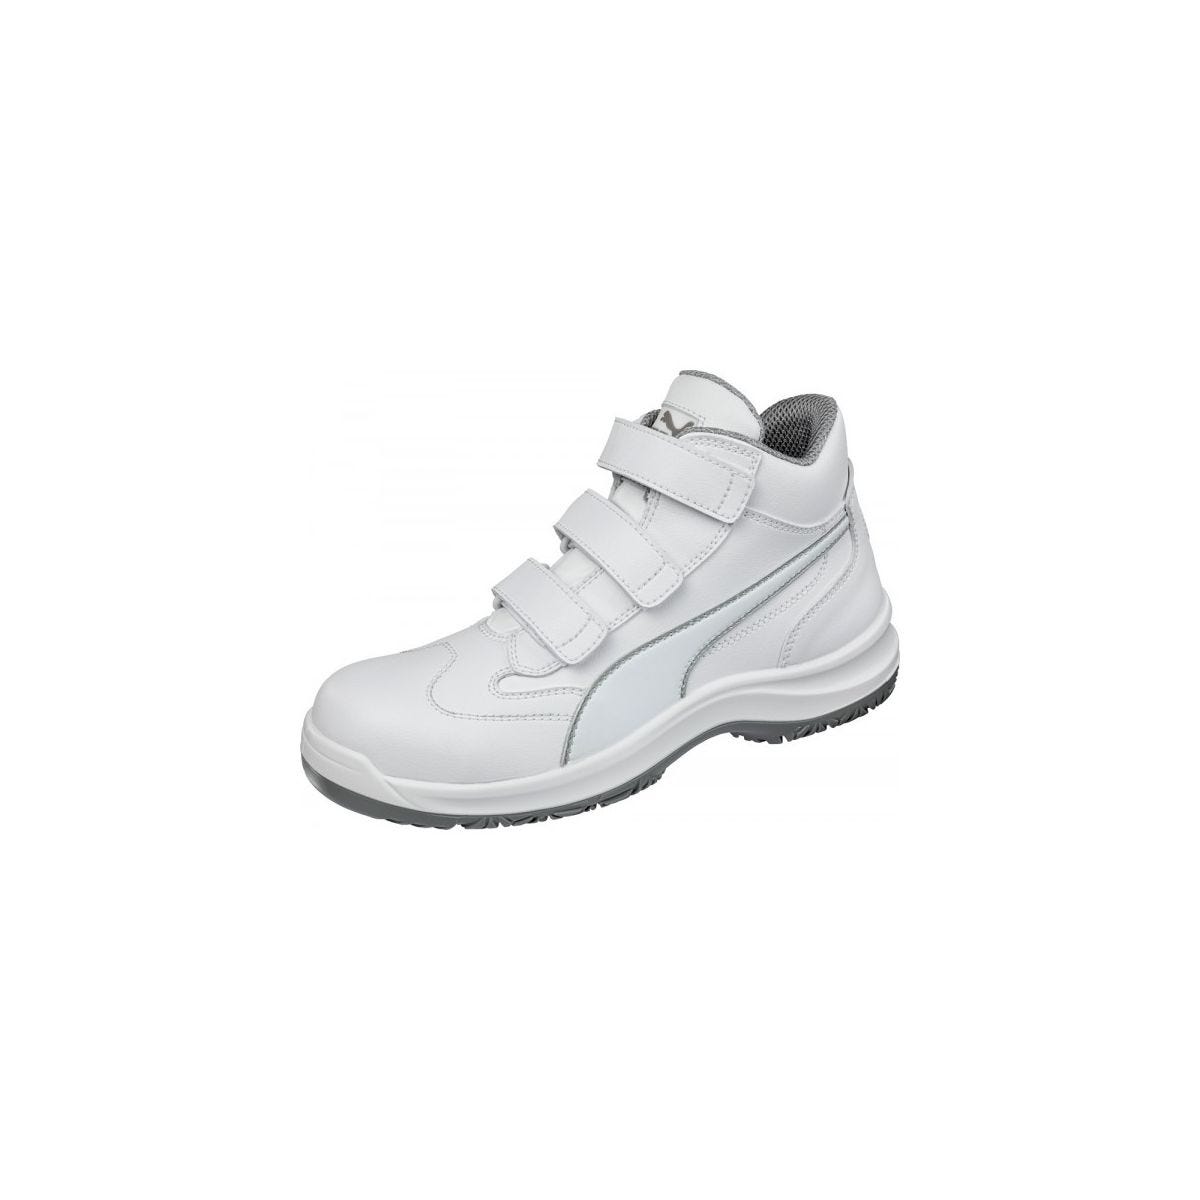 Chaussures de sécurité Absolute Mid S2 Blanc - Puma - Taille 38 1